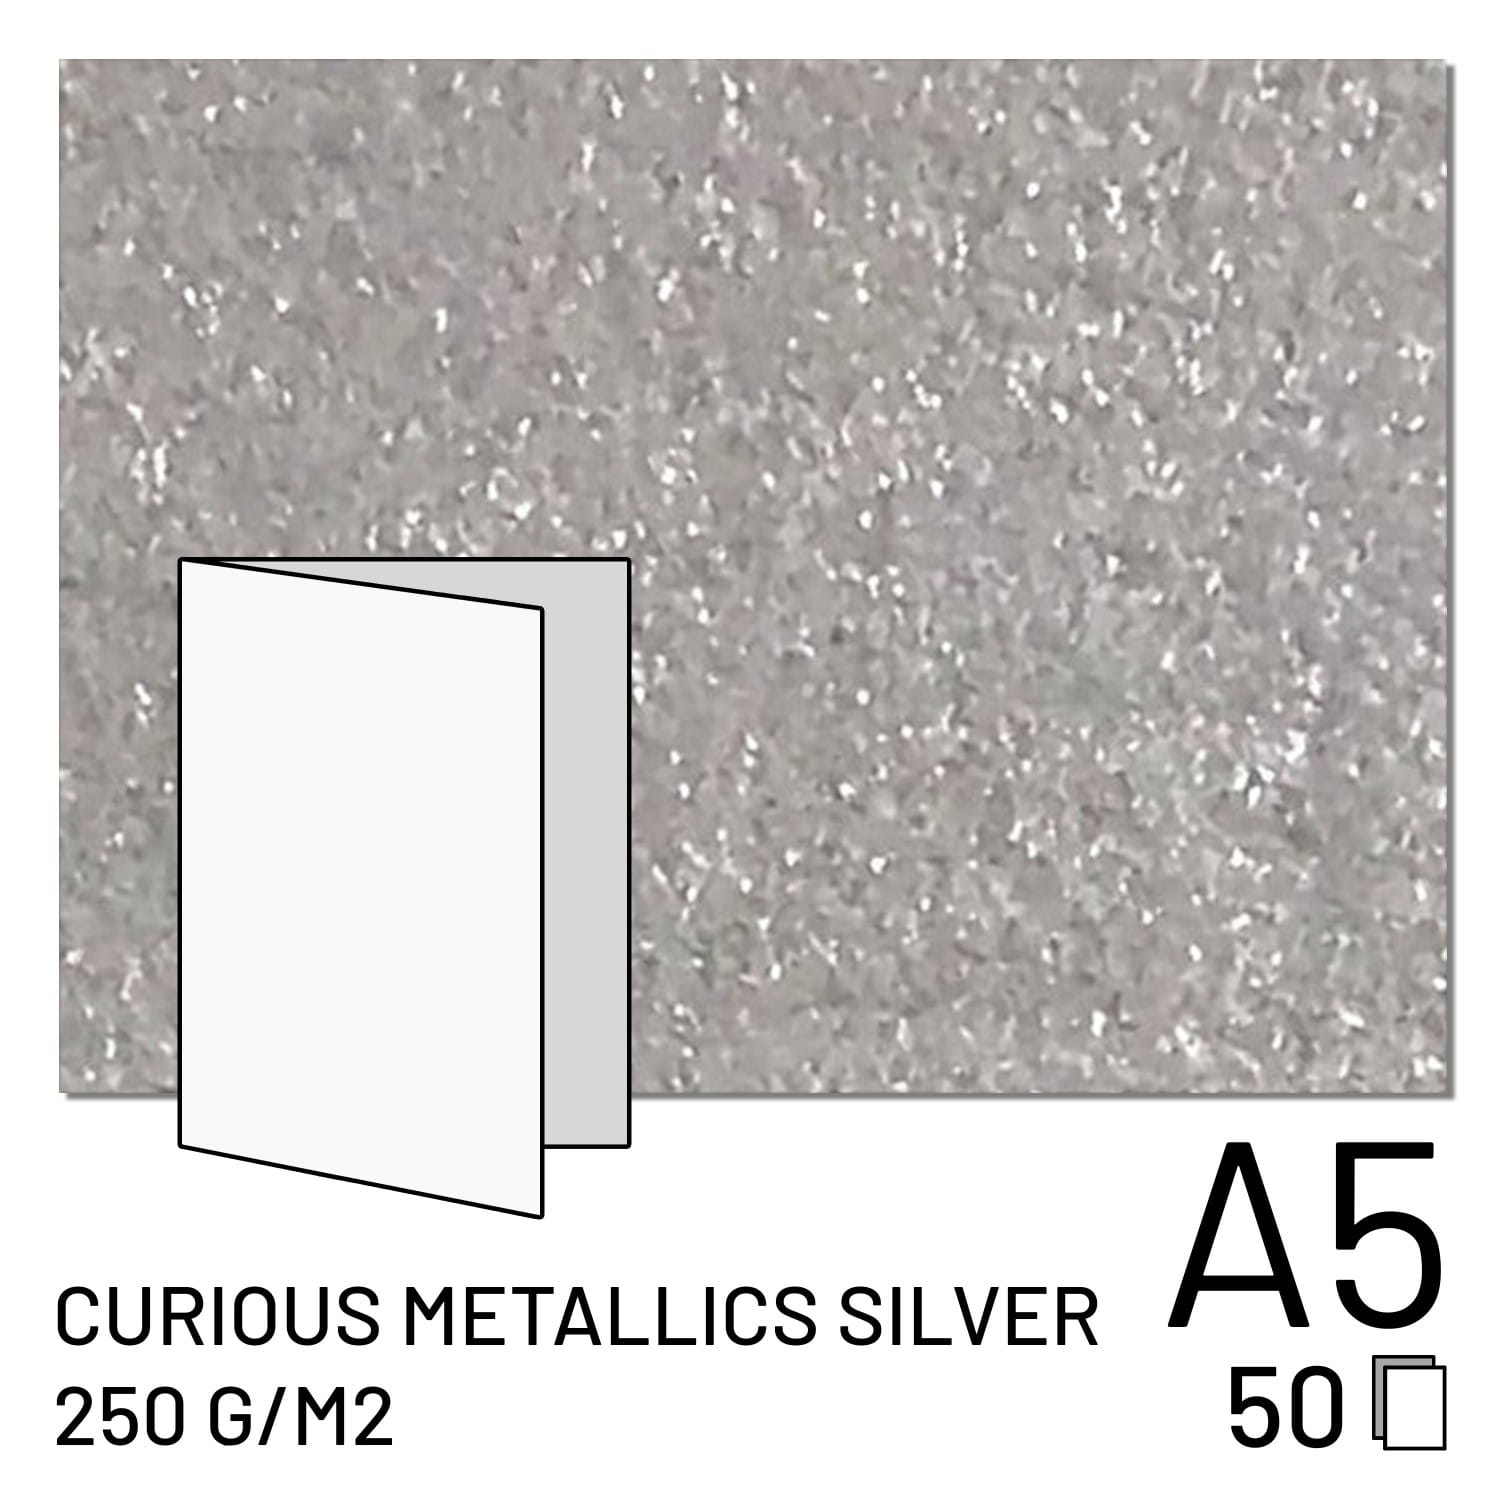 Papier FUJI Curious Metallics Silver - 250g A4 plié / A5 2 volets (50 feuilles) (70100148097)